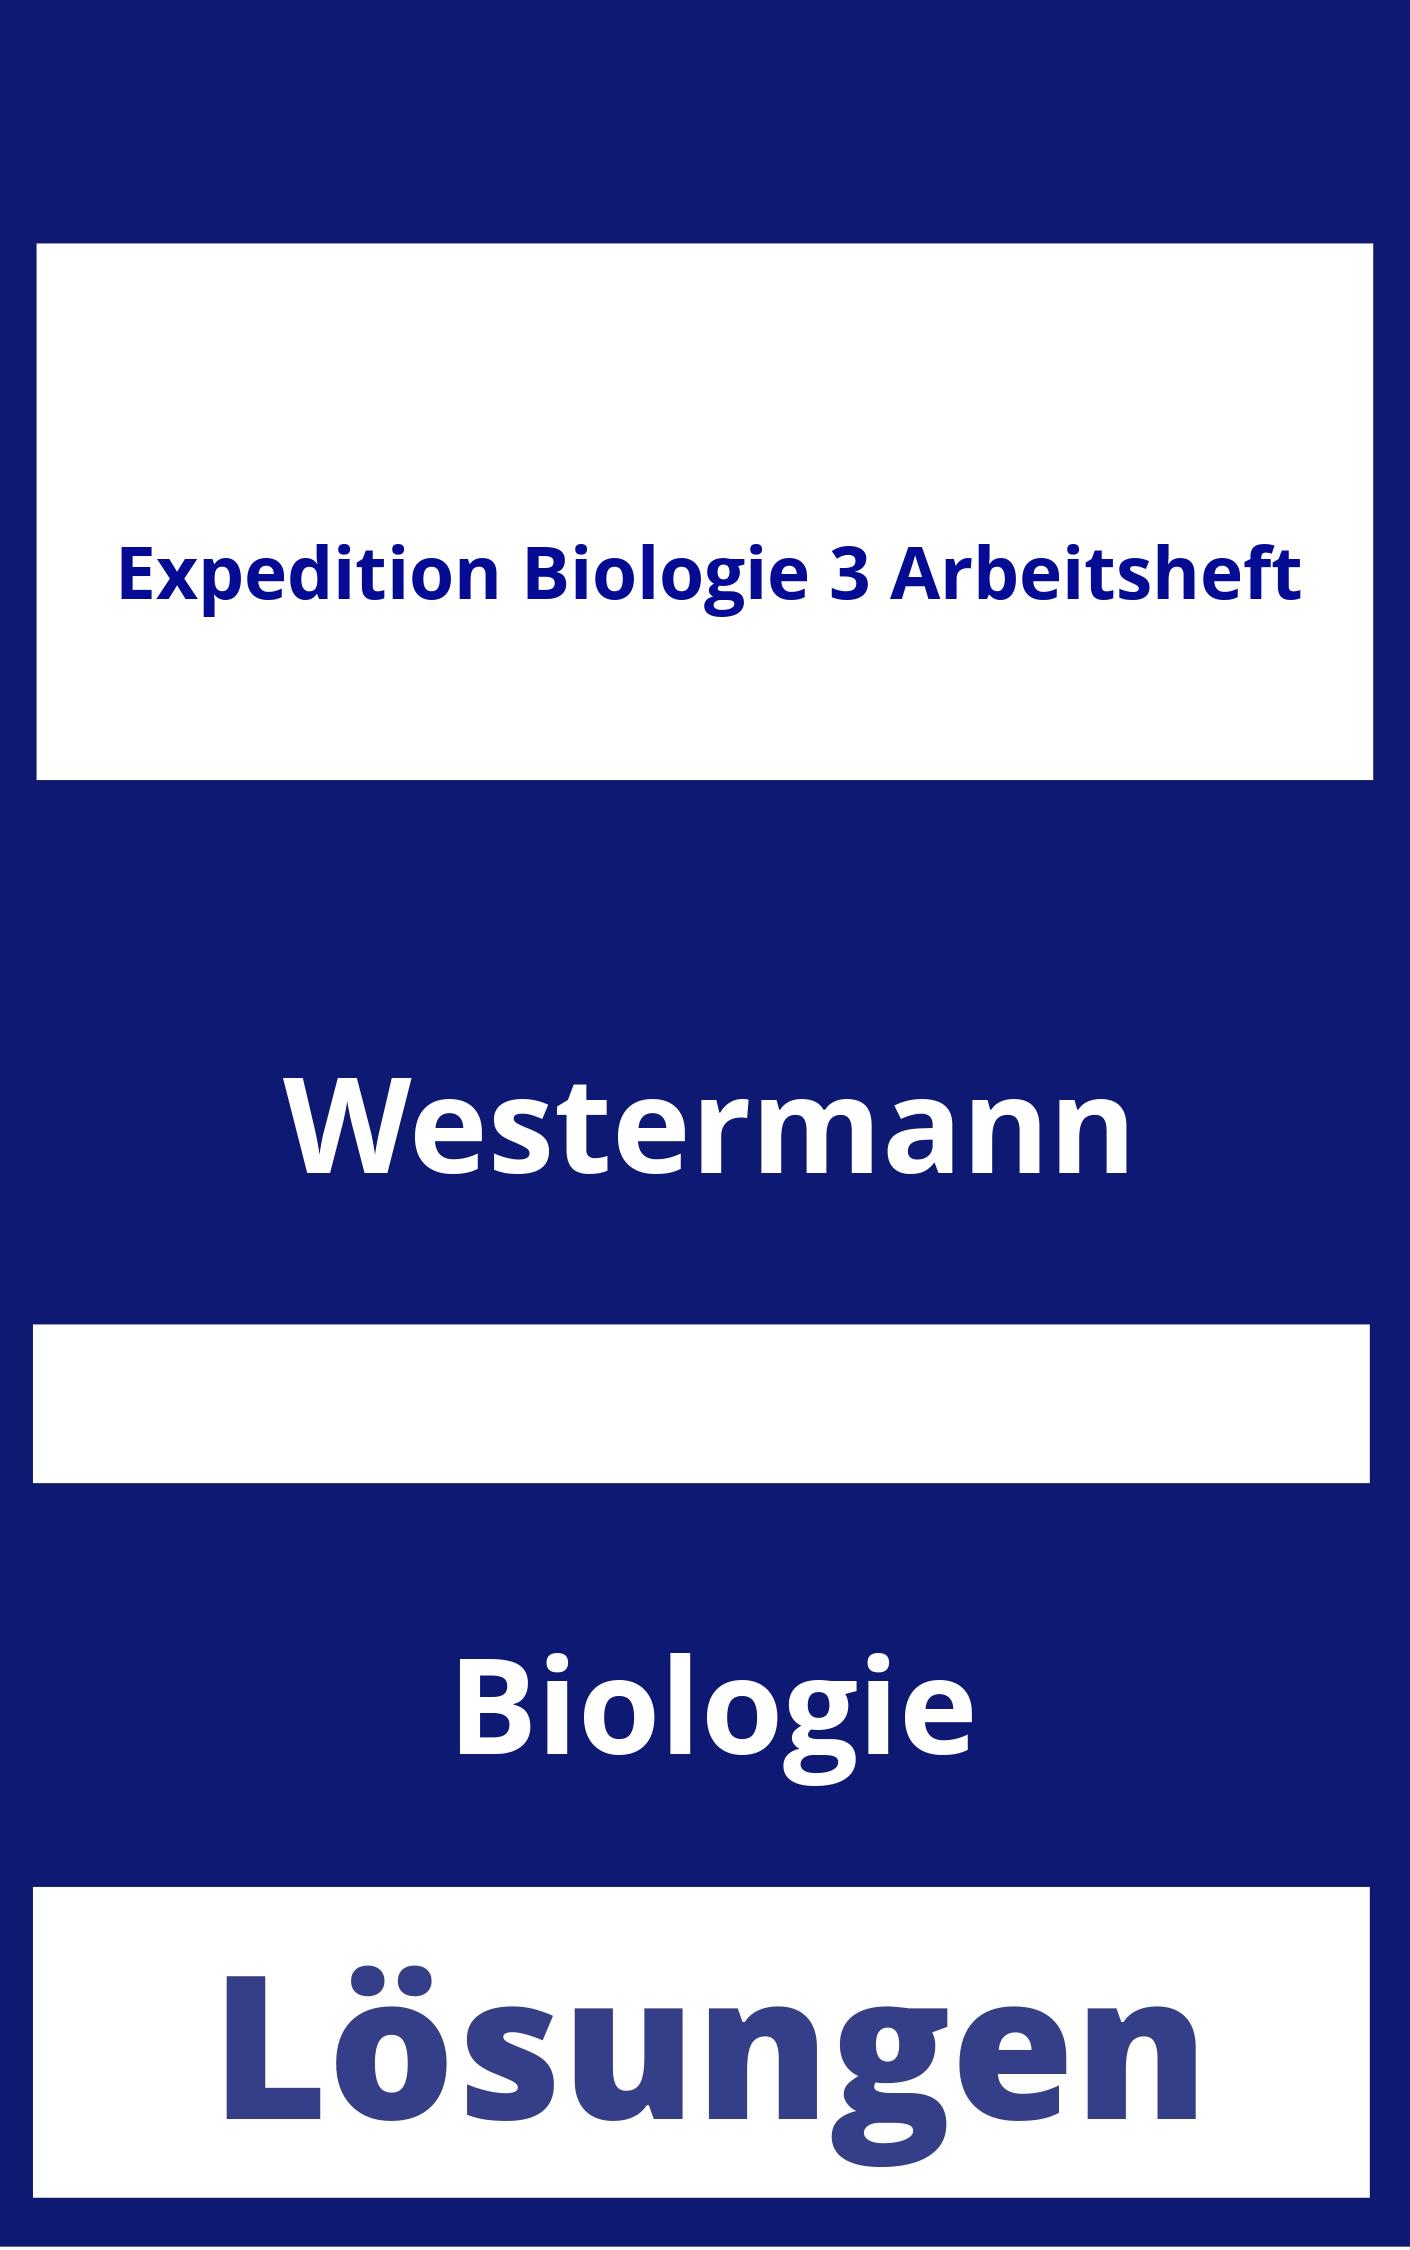 Expedition Biologie 3 Arbeitsheft